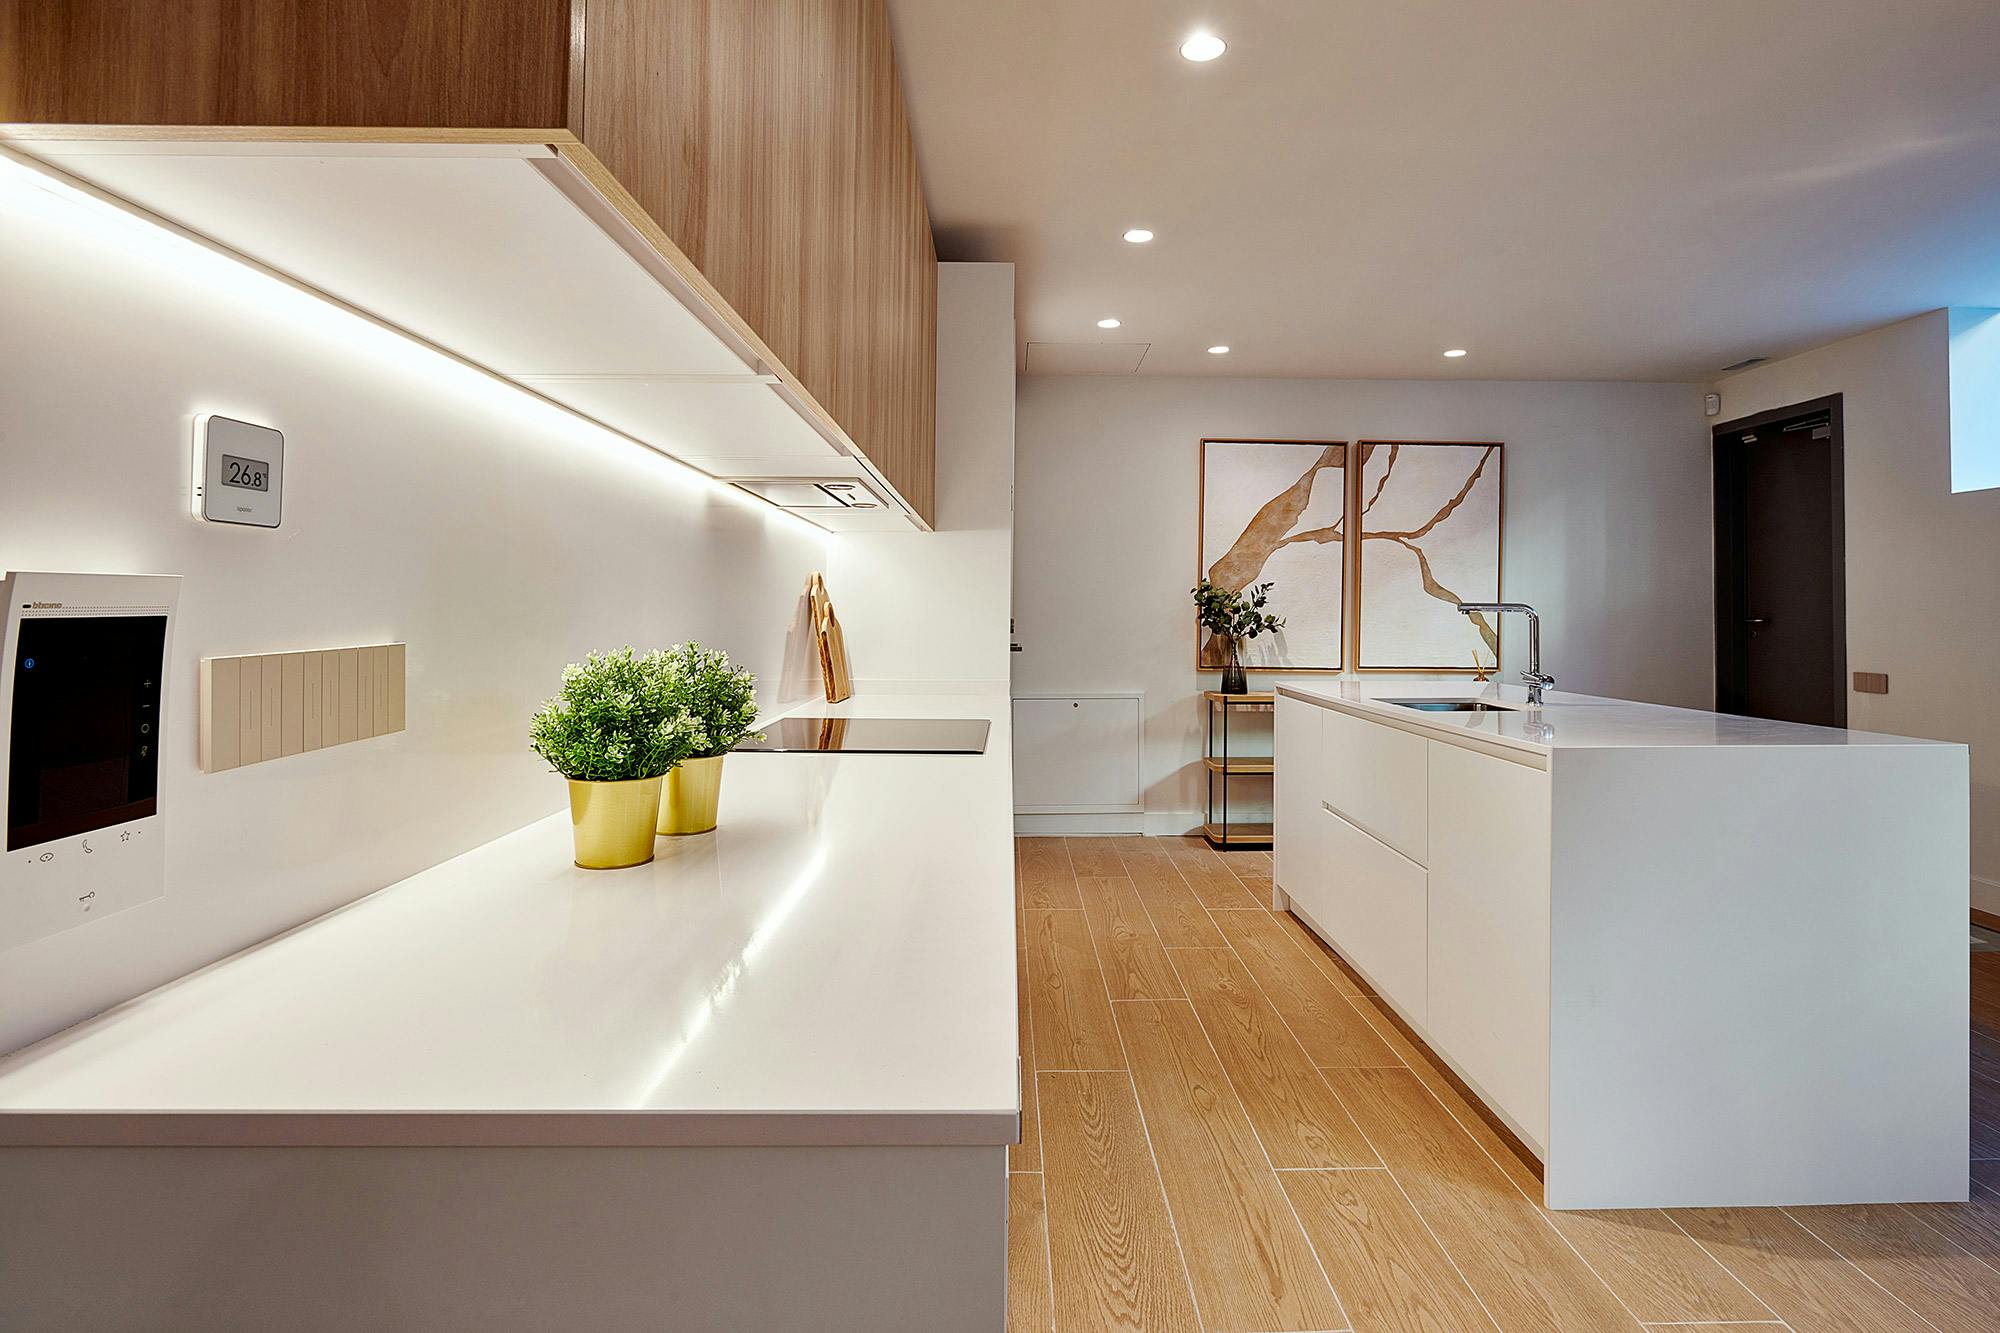 Numero immagine 41 della sezione corrente di Cosentino, the star of the new functional, modern and sustainable house in the AEDAS Homes showroom in Madrid di Cosentino Italia